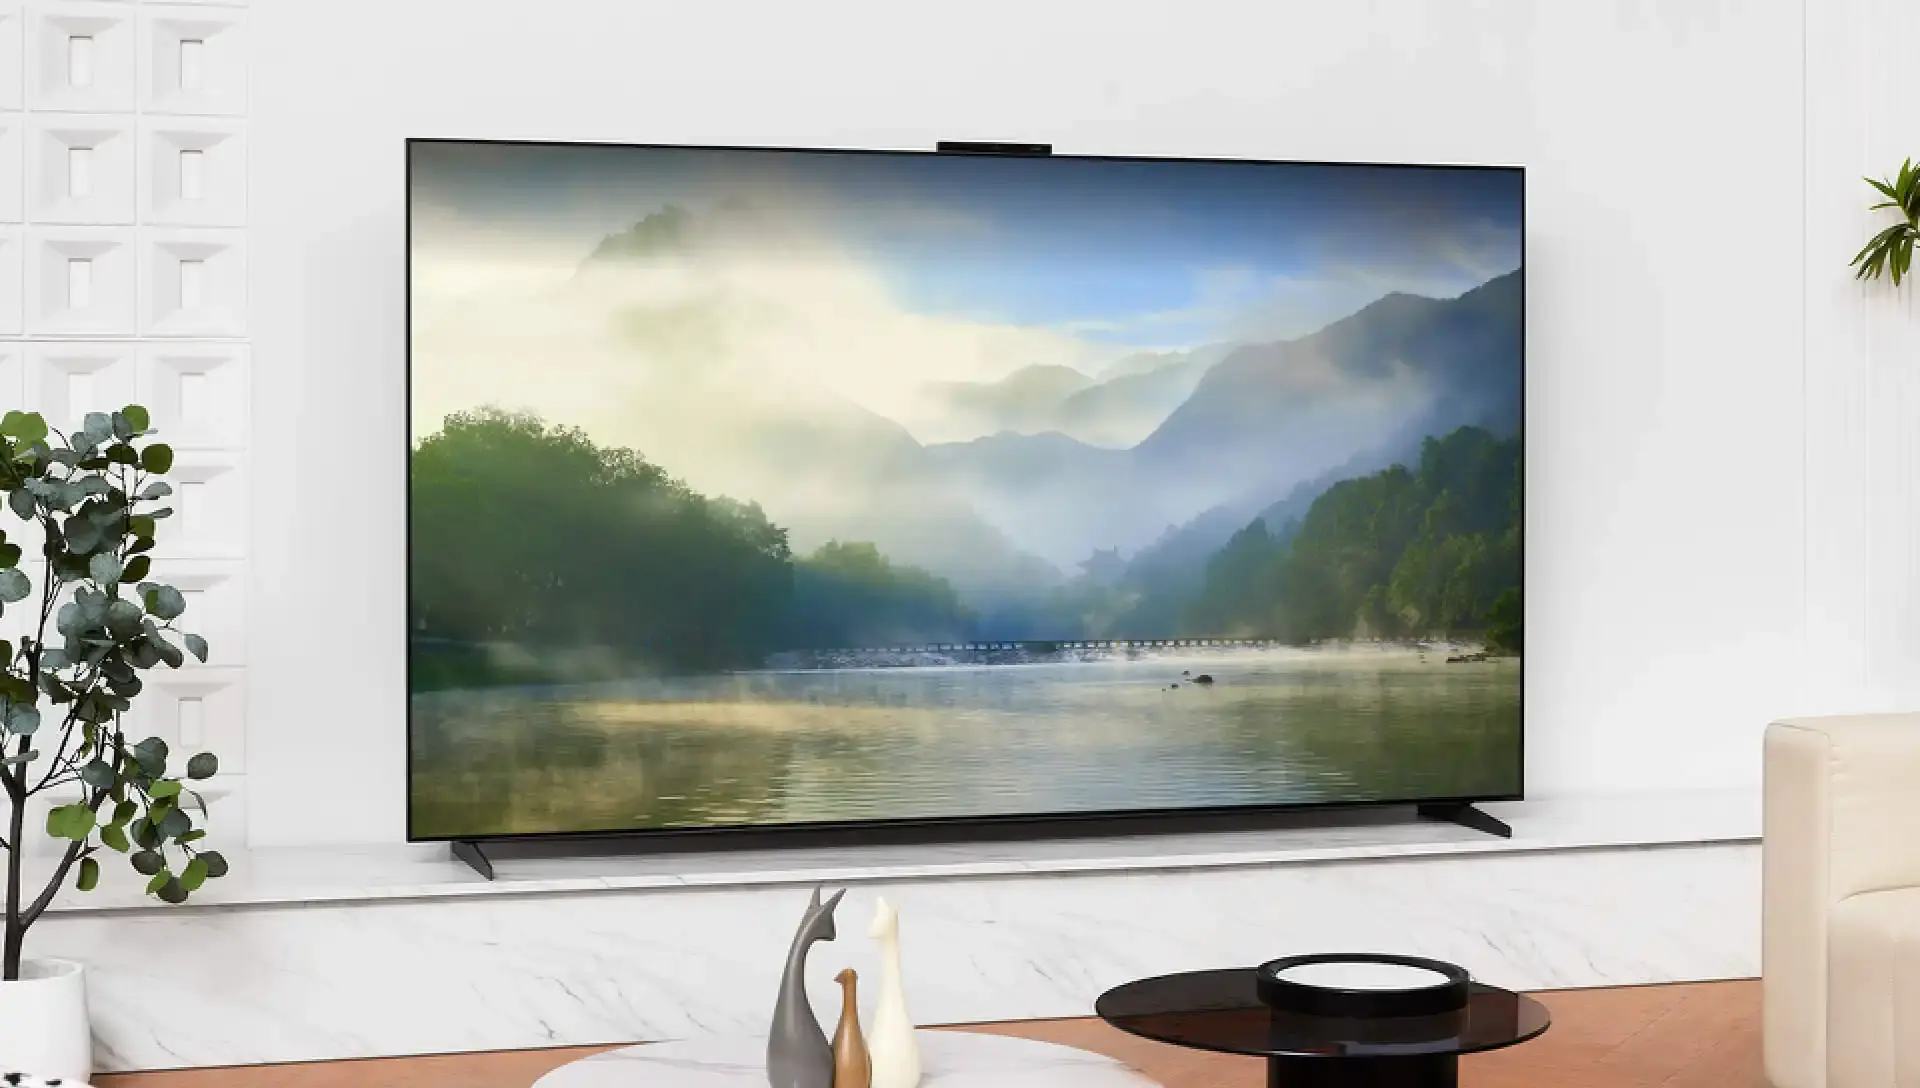 Представлений 85-дюймовий телевізор Huawei Smart Screen V5 з унікальним пультом